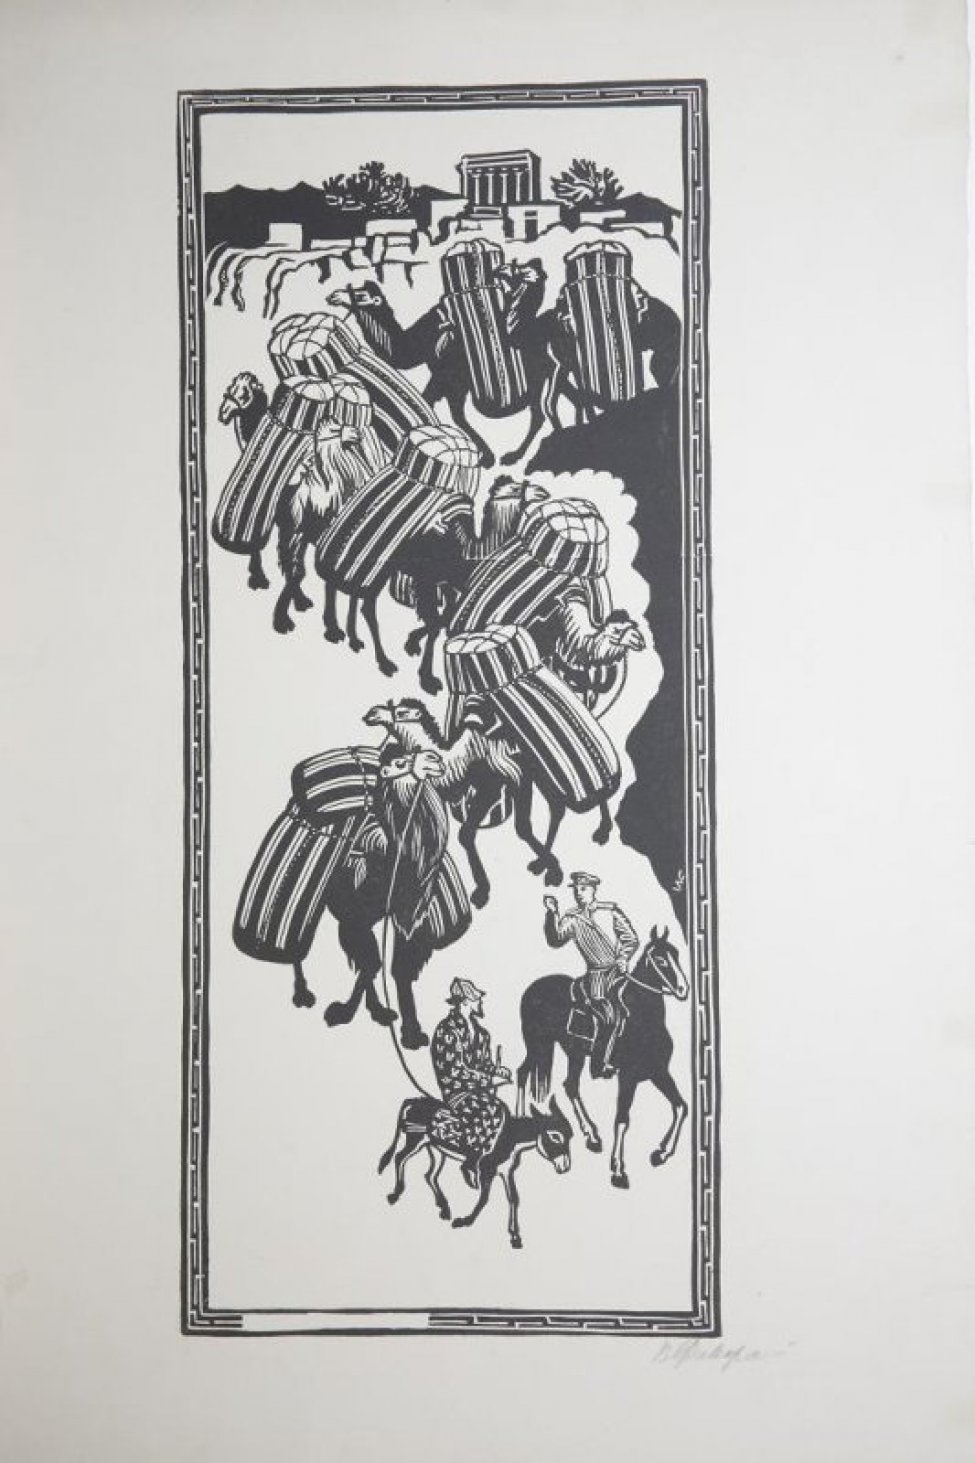 Изображен спускающийся вниз караван из семи верблюдов с полосатыми тюками на горбах. На переднем плане слева мужчина в пестром халате и шляпе, на осле, справа военный, с поднятой правой рукой, на коне.